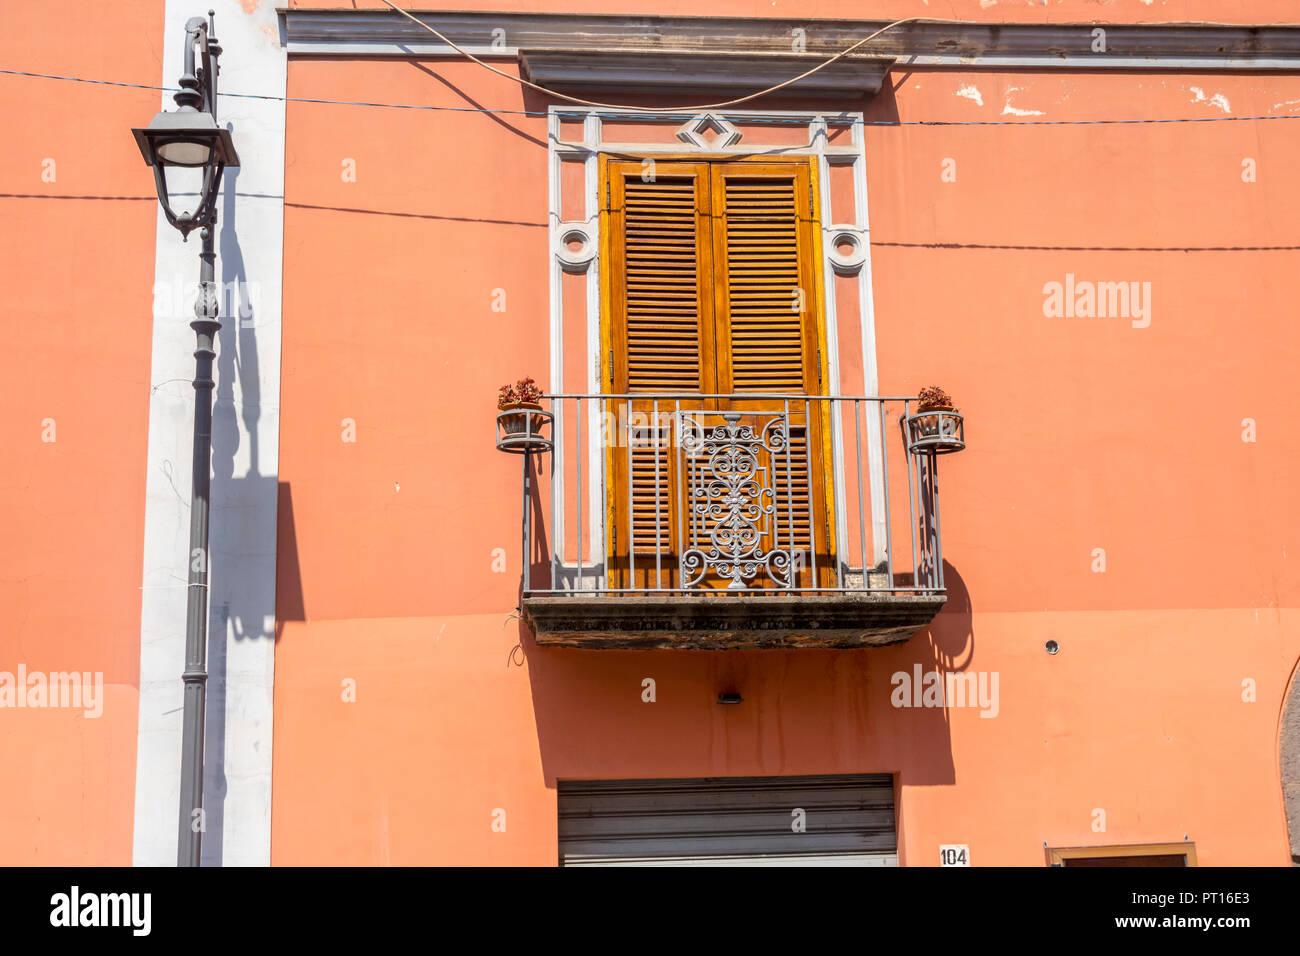 Traditionelle italienische Tür mit Fensterläden, Metall balkon Italien, orange braun Wand über Shop, altmodisches Konzept, verzierte, Holz- Shutter Türen Stockfoto